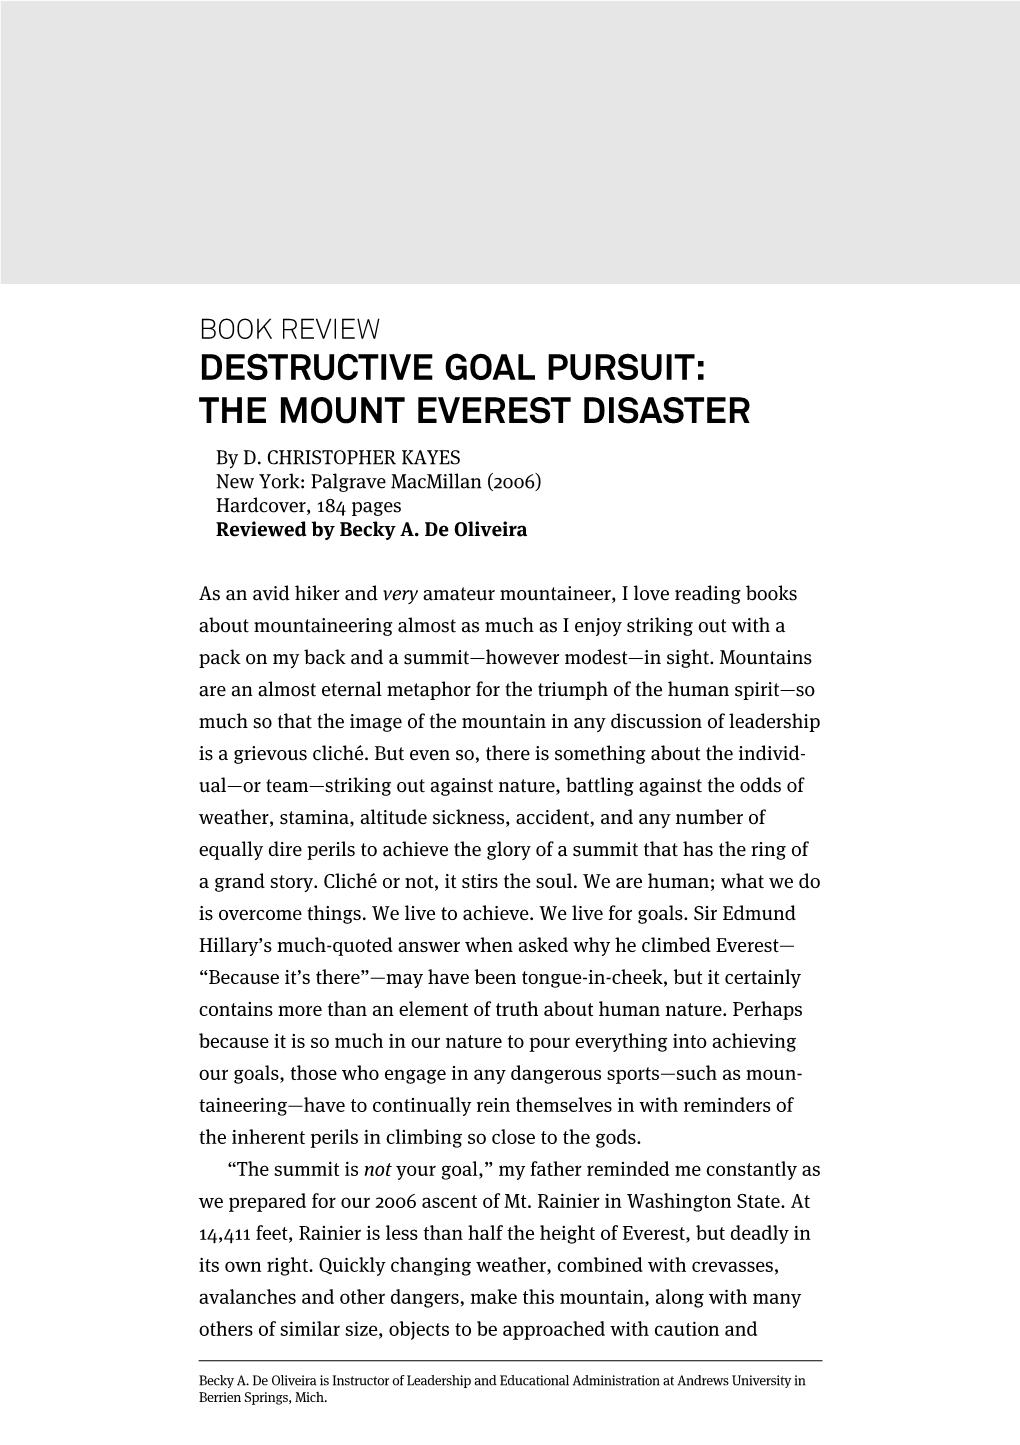 DESTRUCTIVE GOAL PURSUIT: the MOUNT EVEREST DISASTER by D